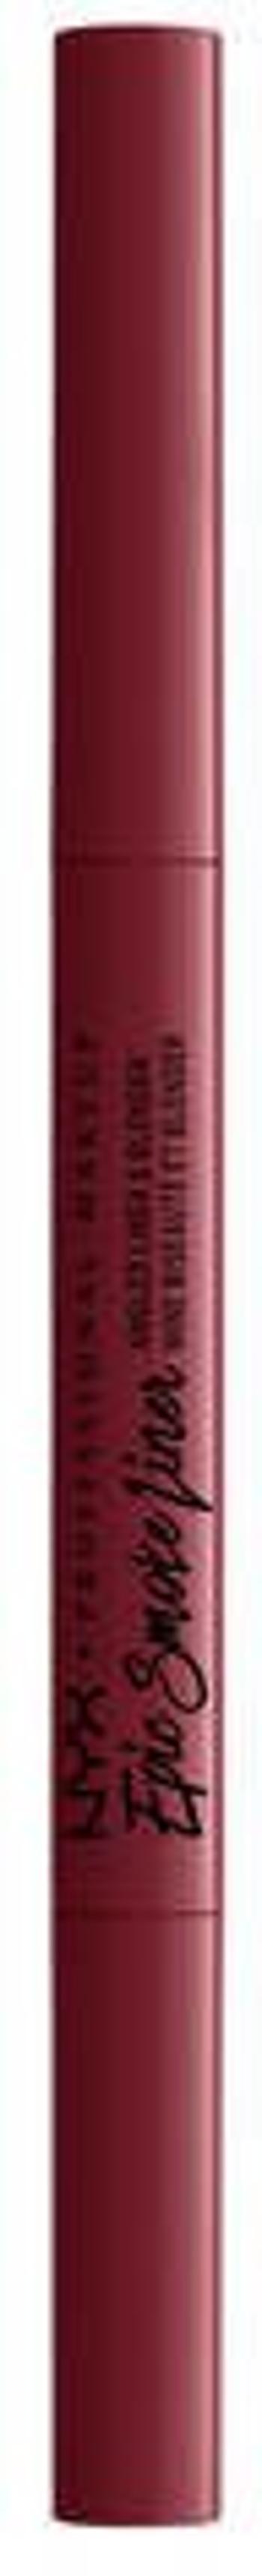 NYX Professional Makeup Epic Smoke Liner dlouhotrvající tužka na oči - 06 Brick Fire 0.17 g